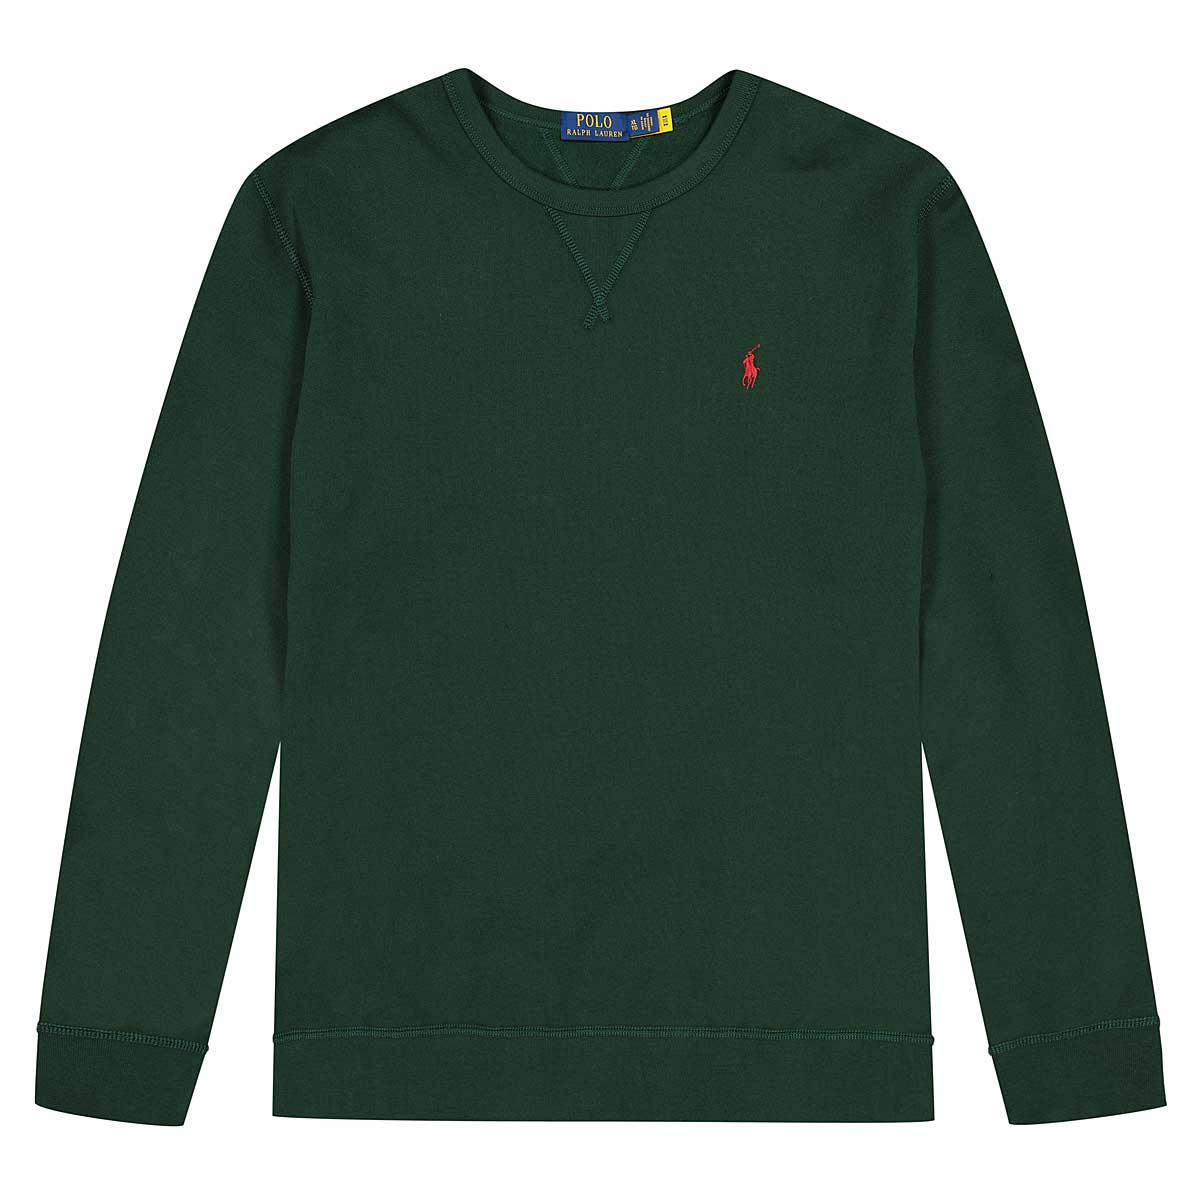 Polo Ralph Lauren Long Sleeve Sweatshirt, College Green/C3961